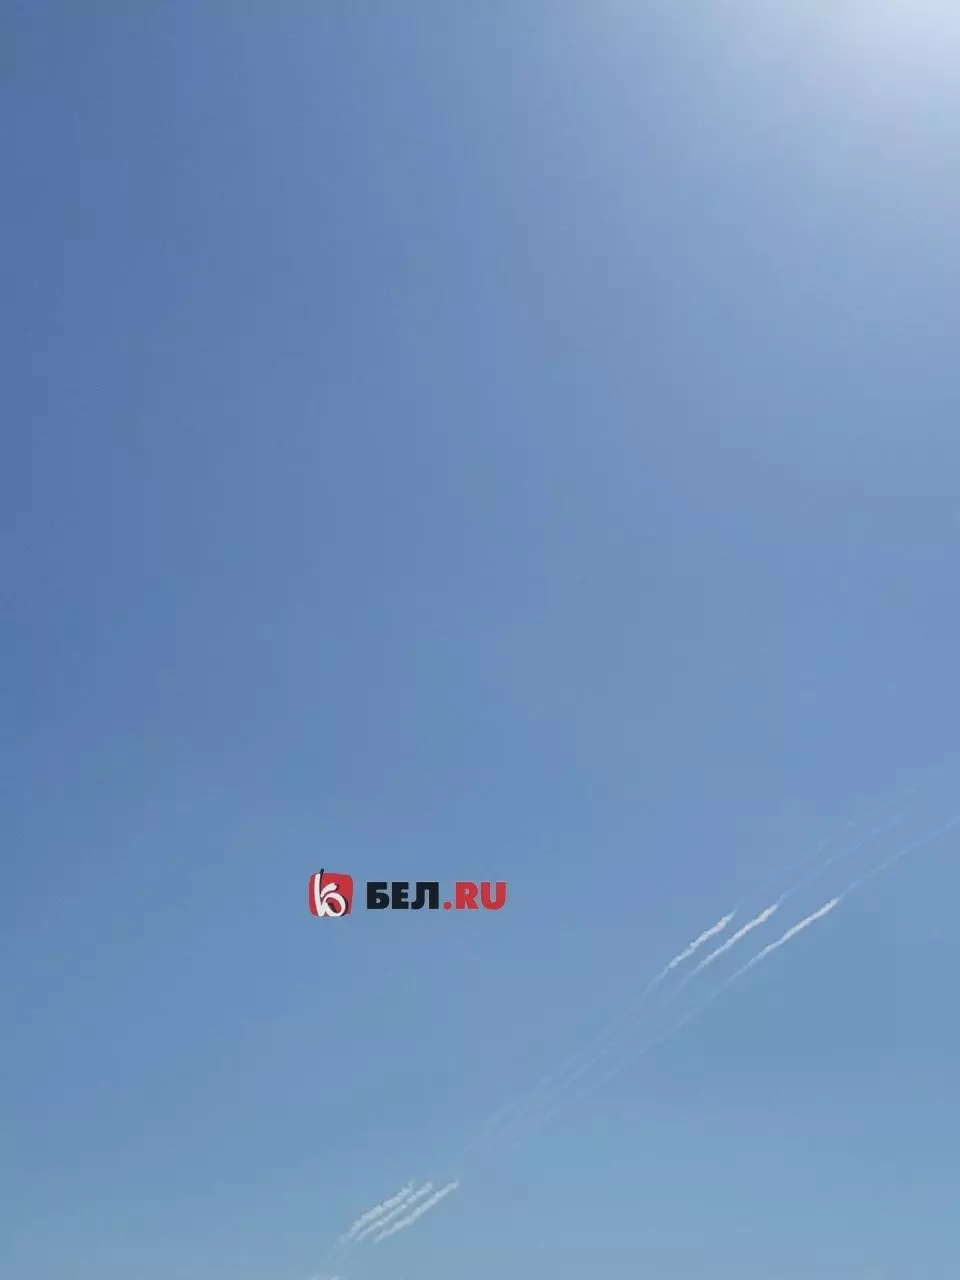 Следы в небе после громких звуков над Белгородом и объявления ракетной опасности